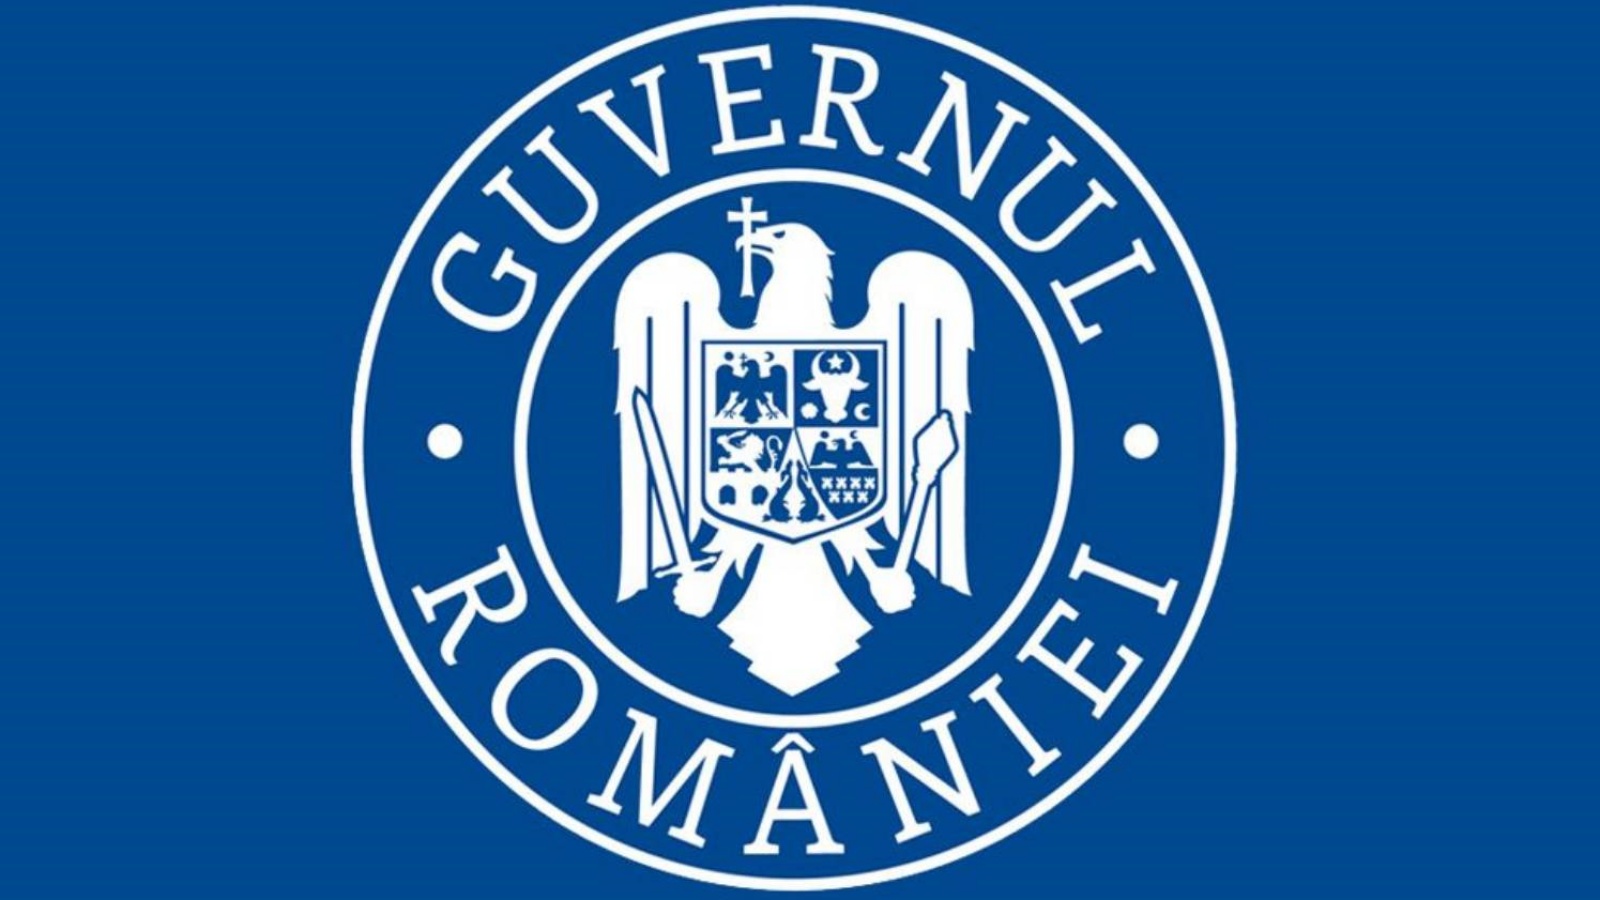 La Roumanie poursuit sa croissance économique selon le gouvernement